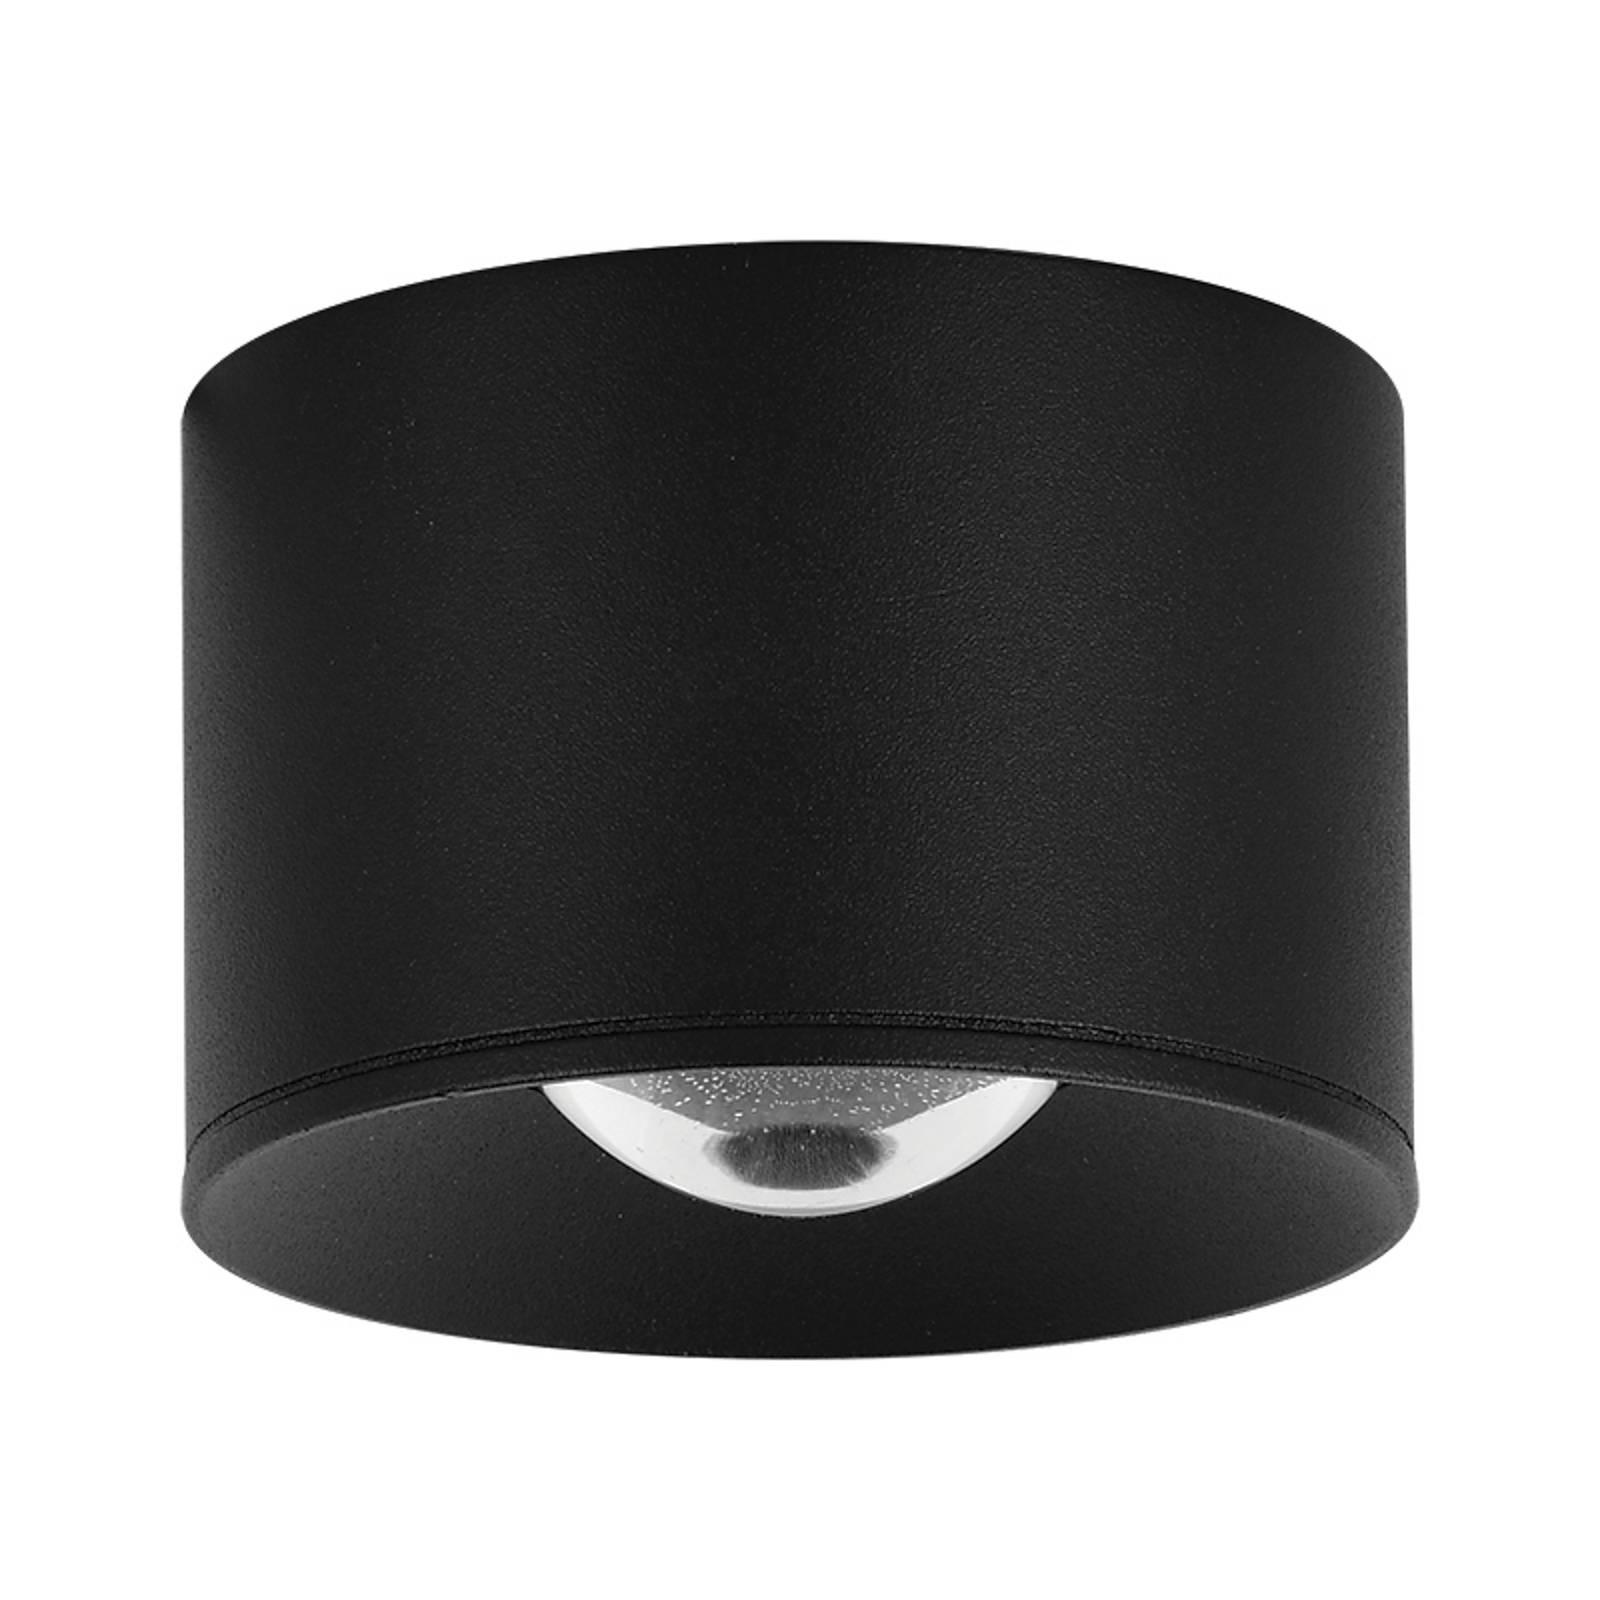 LED stropné svietidlo S131, Ø 8 cm, pieskovo čierne